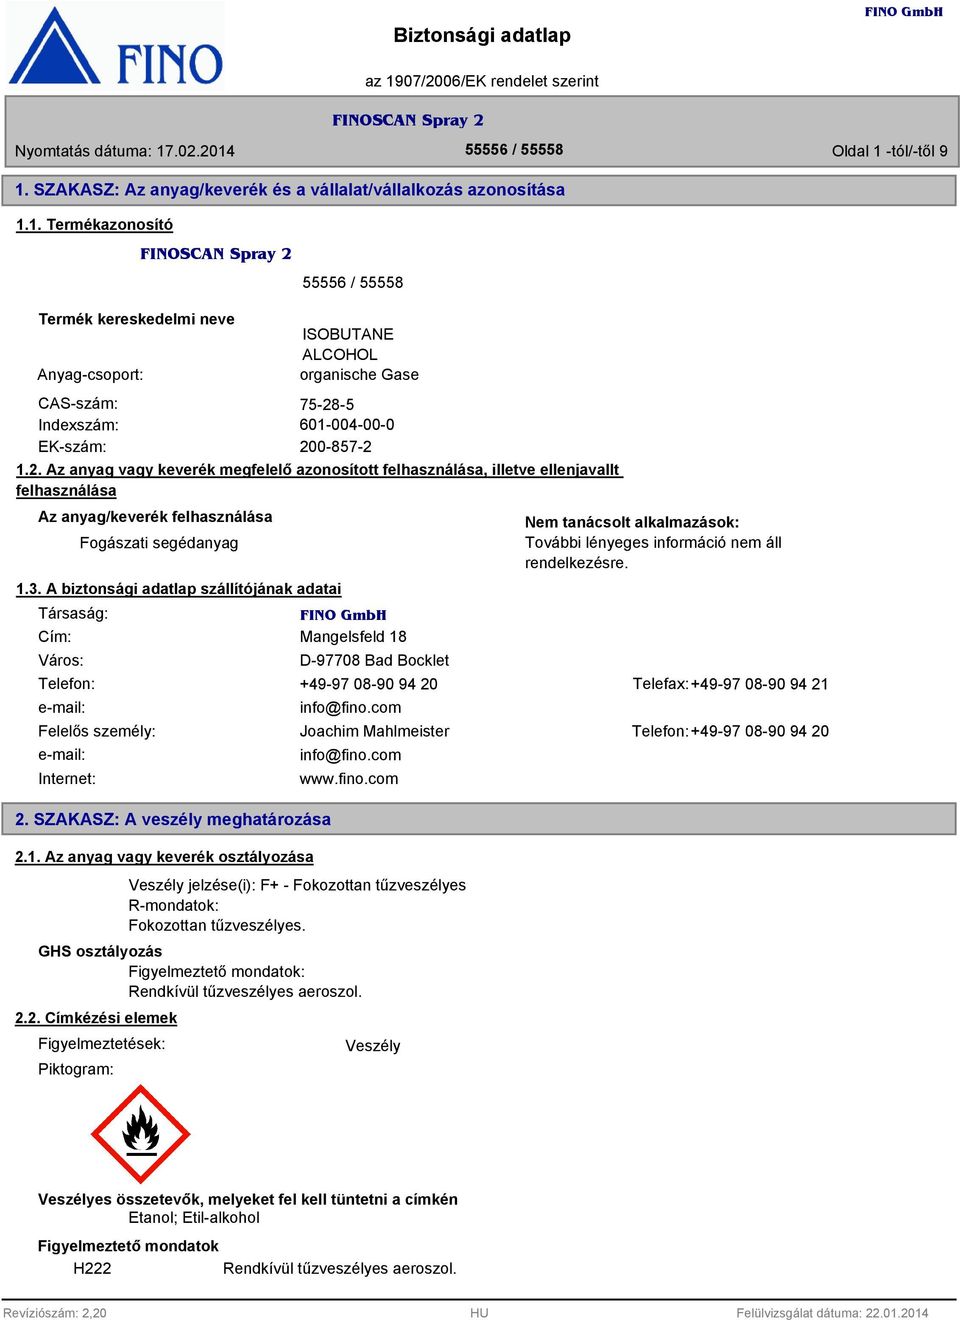 A biztonsági adatlap szállítójának adatai Társaság: Cím: Város: Mangelsfeld 18 D-97708 Bad Bocklet Nem tanácsolt alkalmazások: További lényeges információ nem áll rendelkezésre.